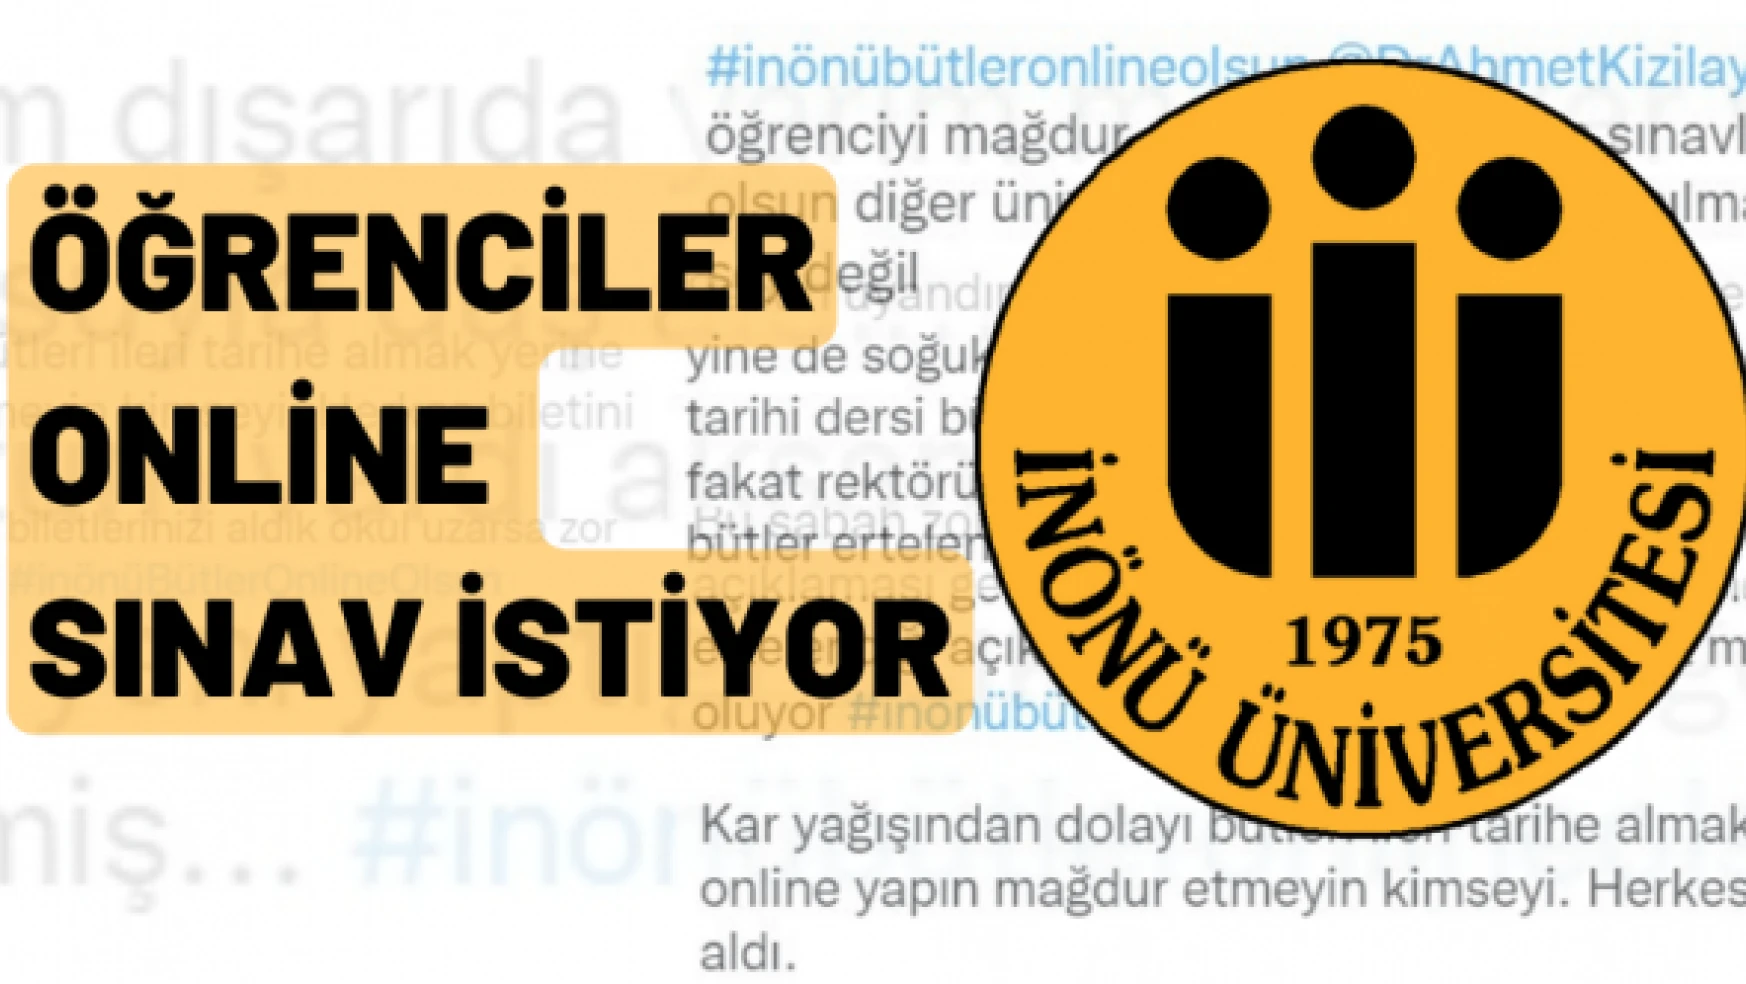 İnönü Üniversitesi öğrencileri online sınav istiyor: #Malatya  #inönübütleronlineolsun